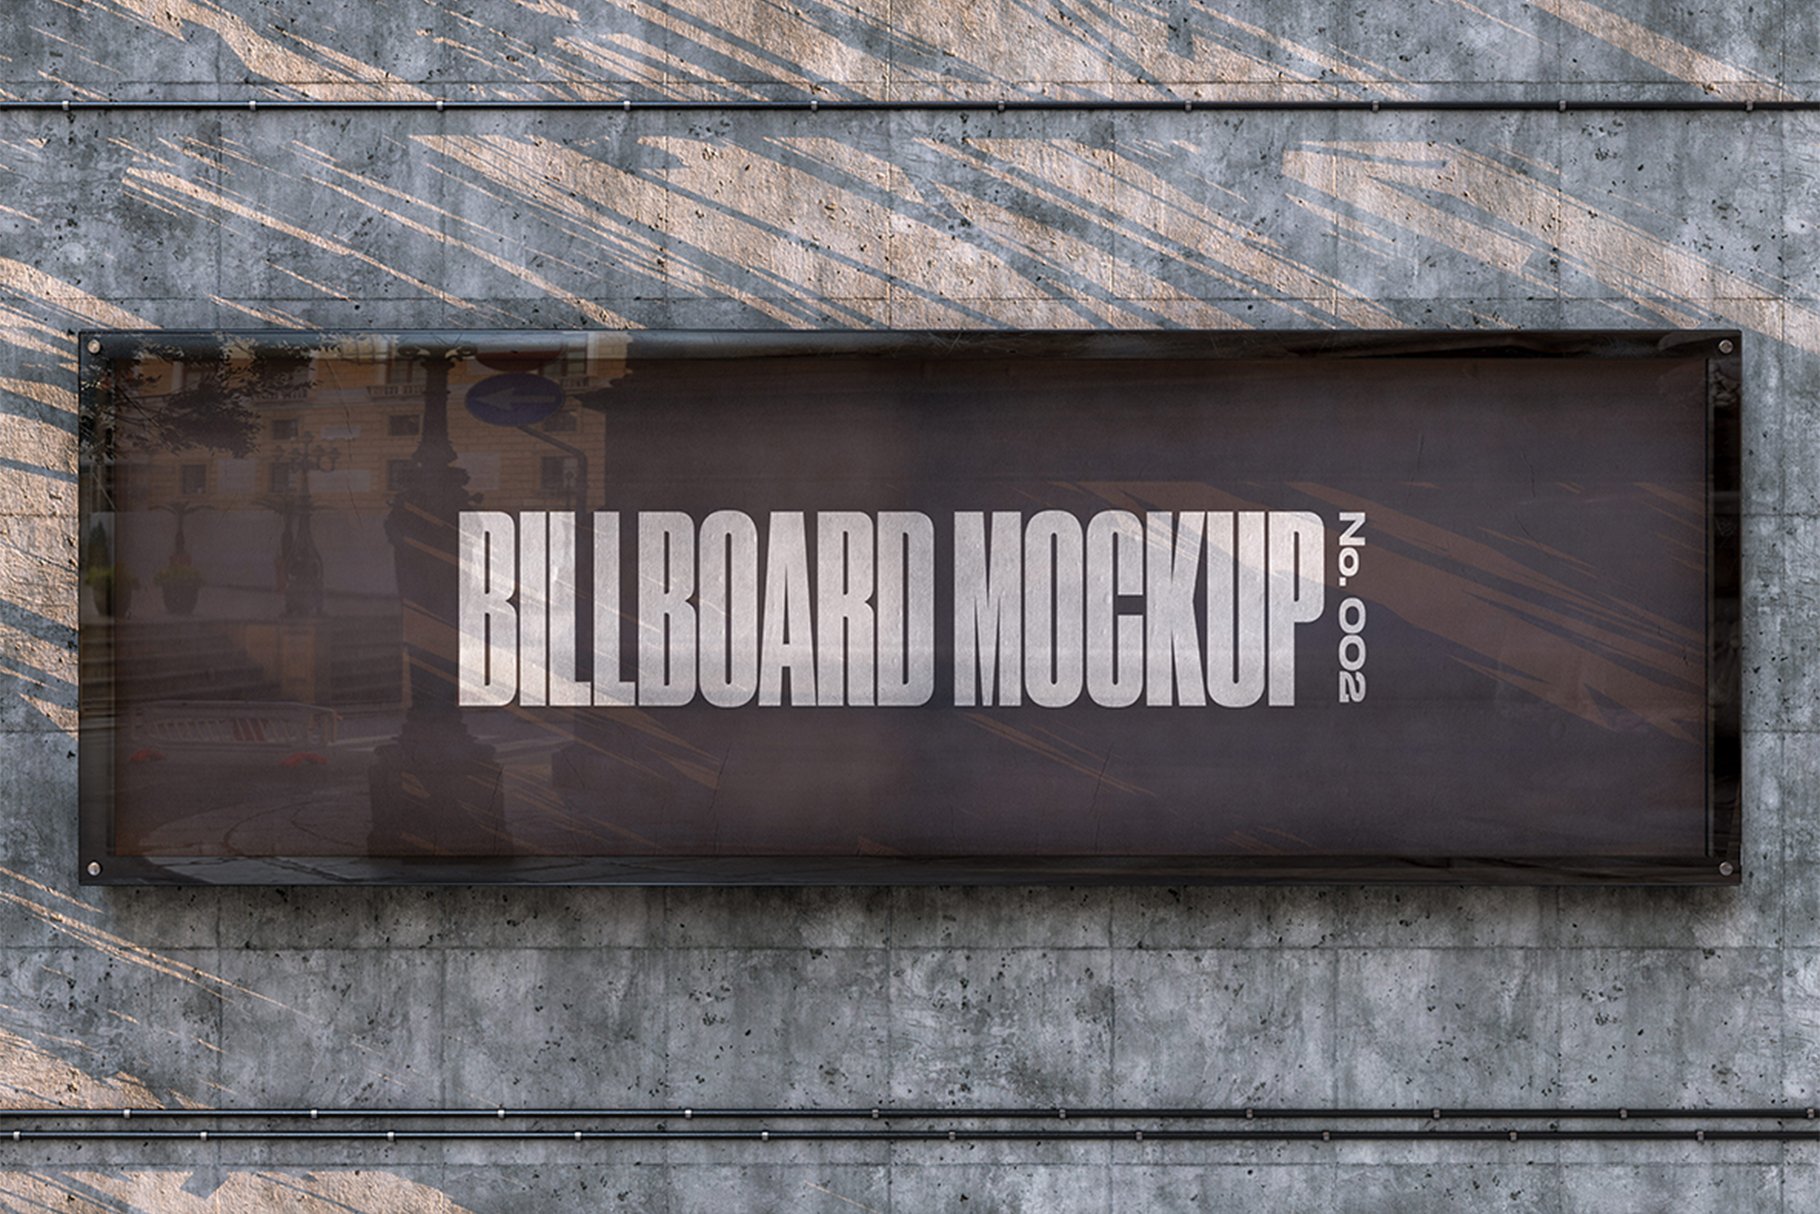 Wall Billboard Mockup - No. 002 cover image.